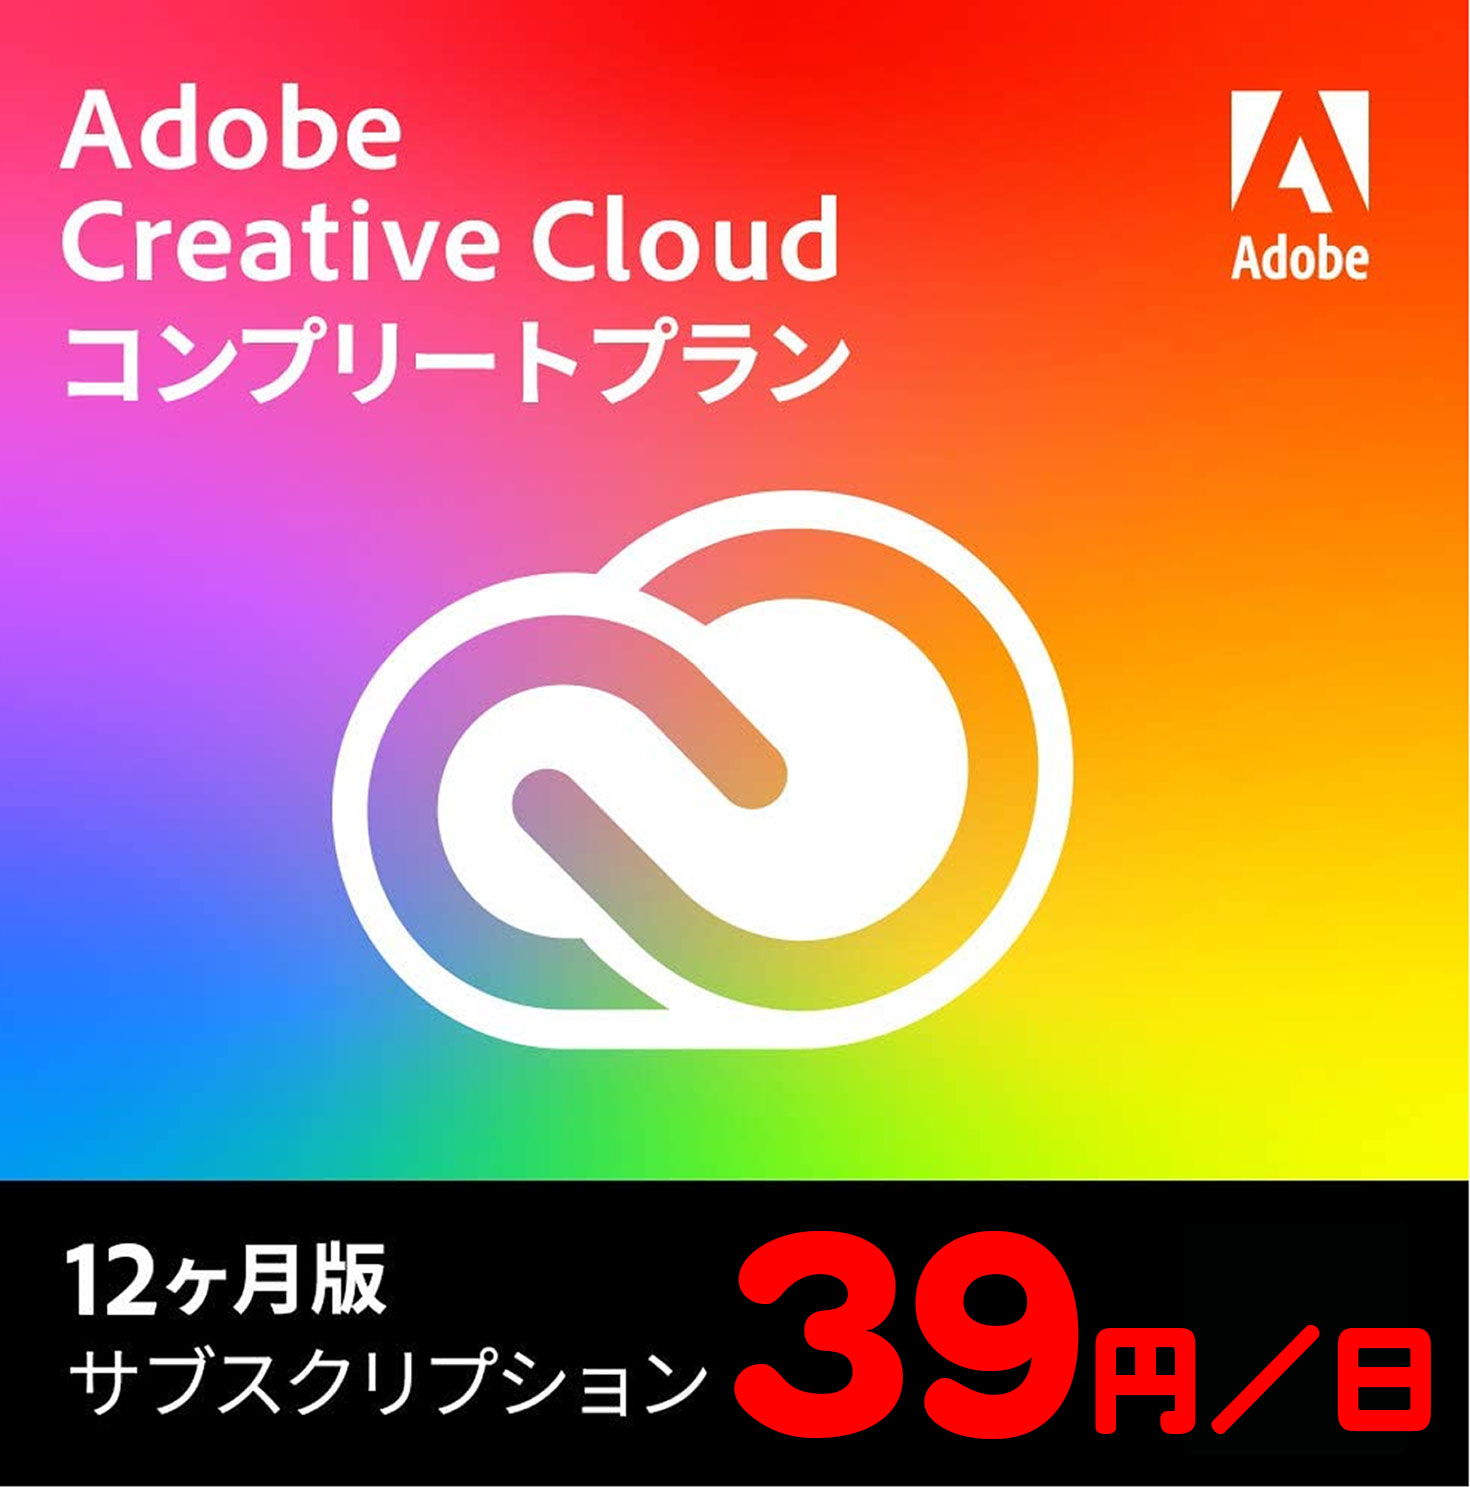 激安!Adobe Creative Cloud - PCまなぶ